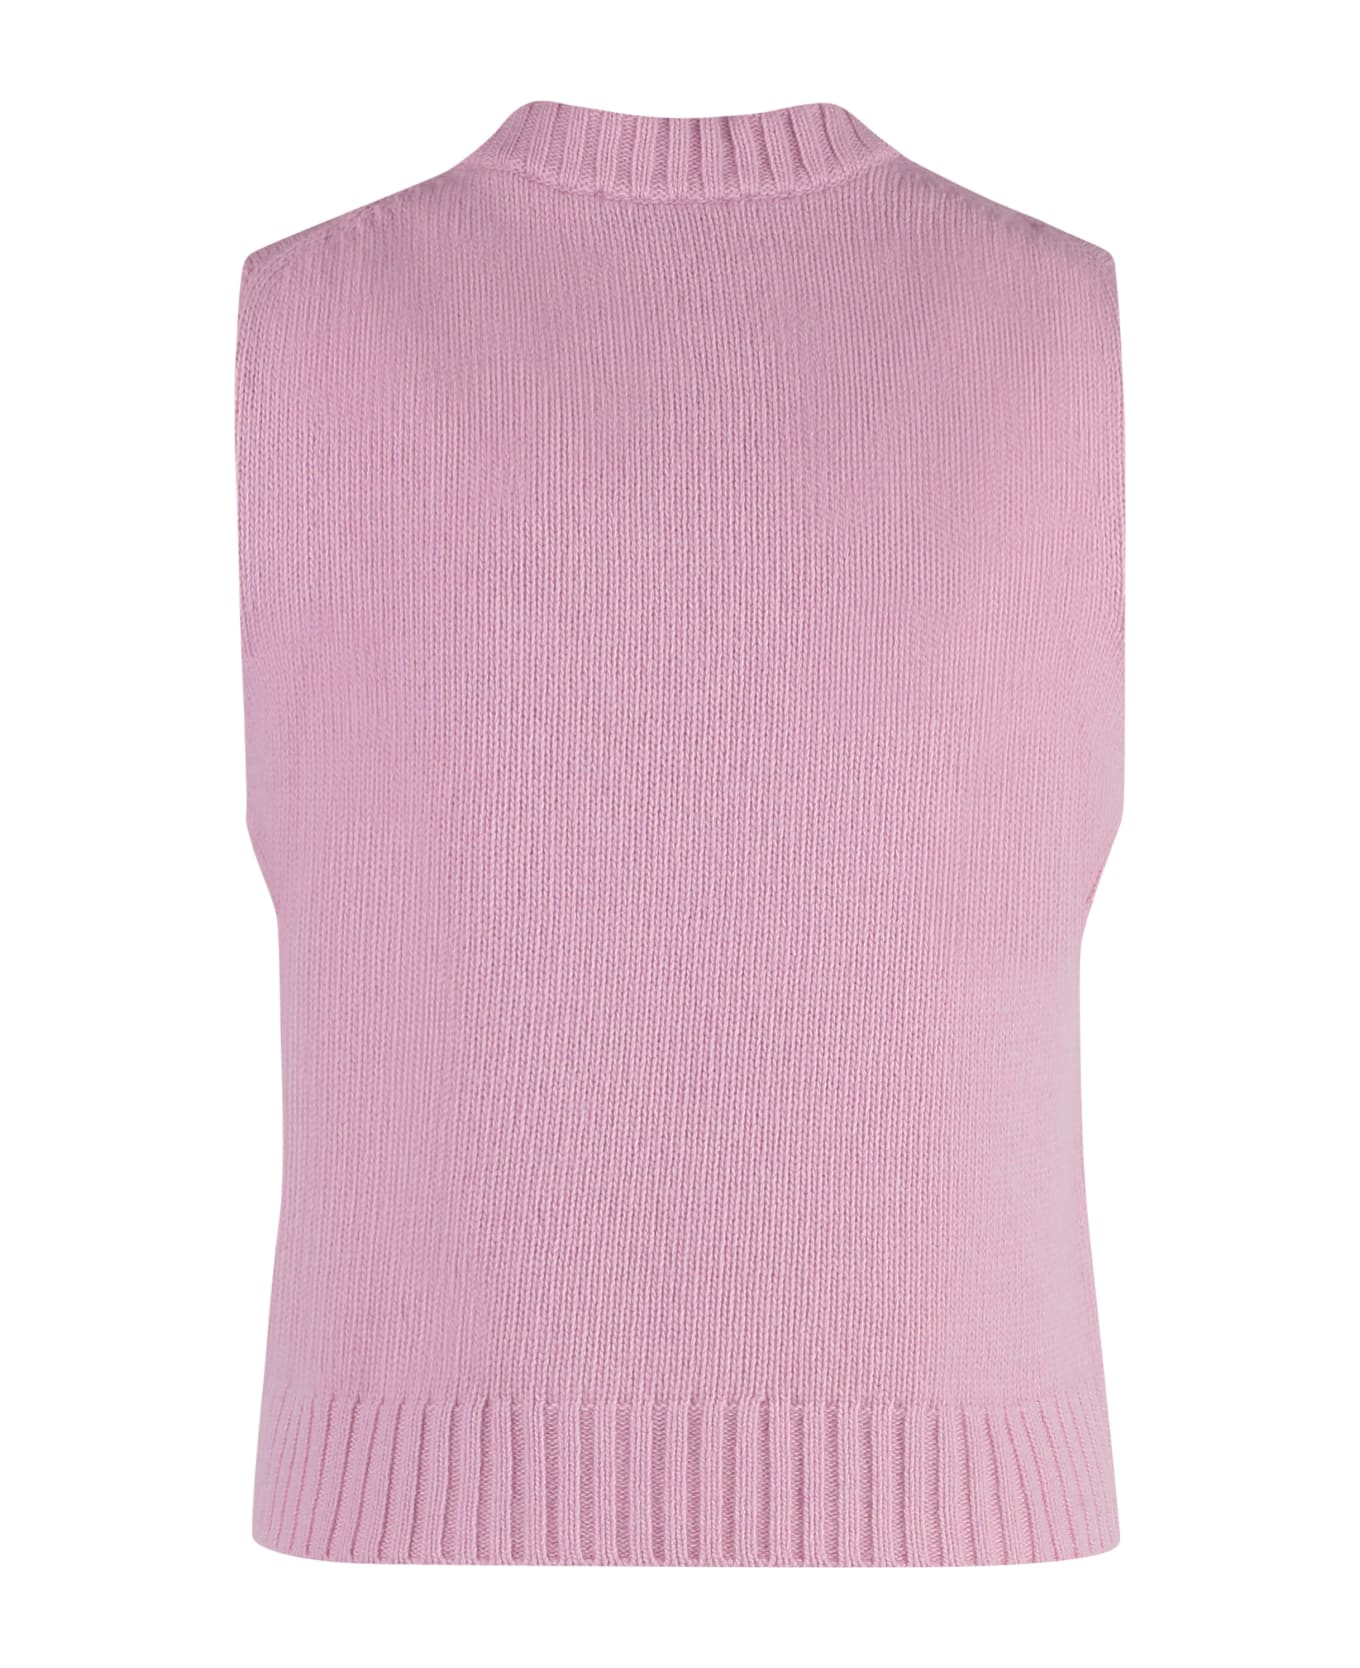 Ganni Wool Blend Knitted Front Vest - Pink